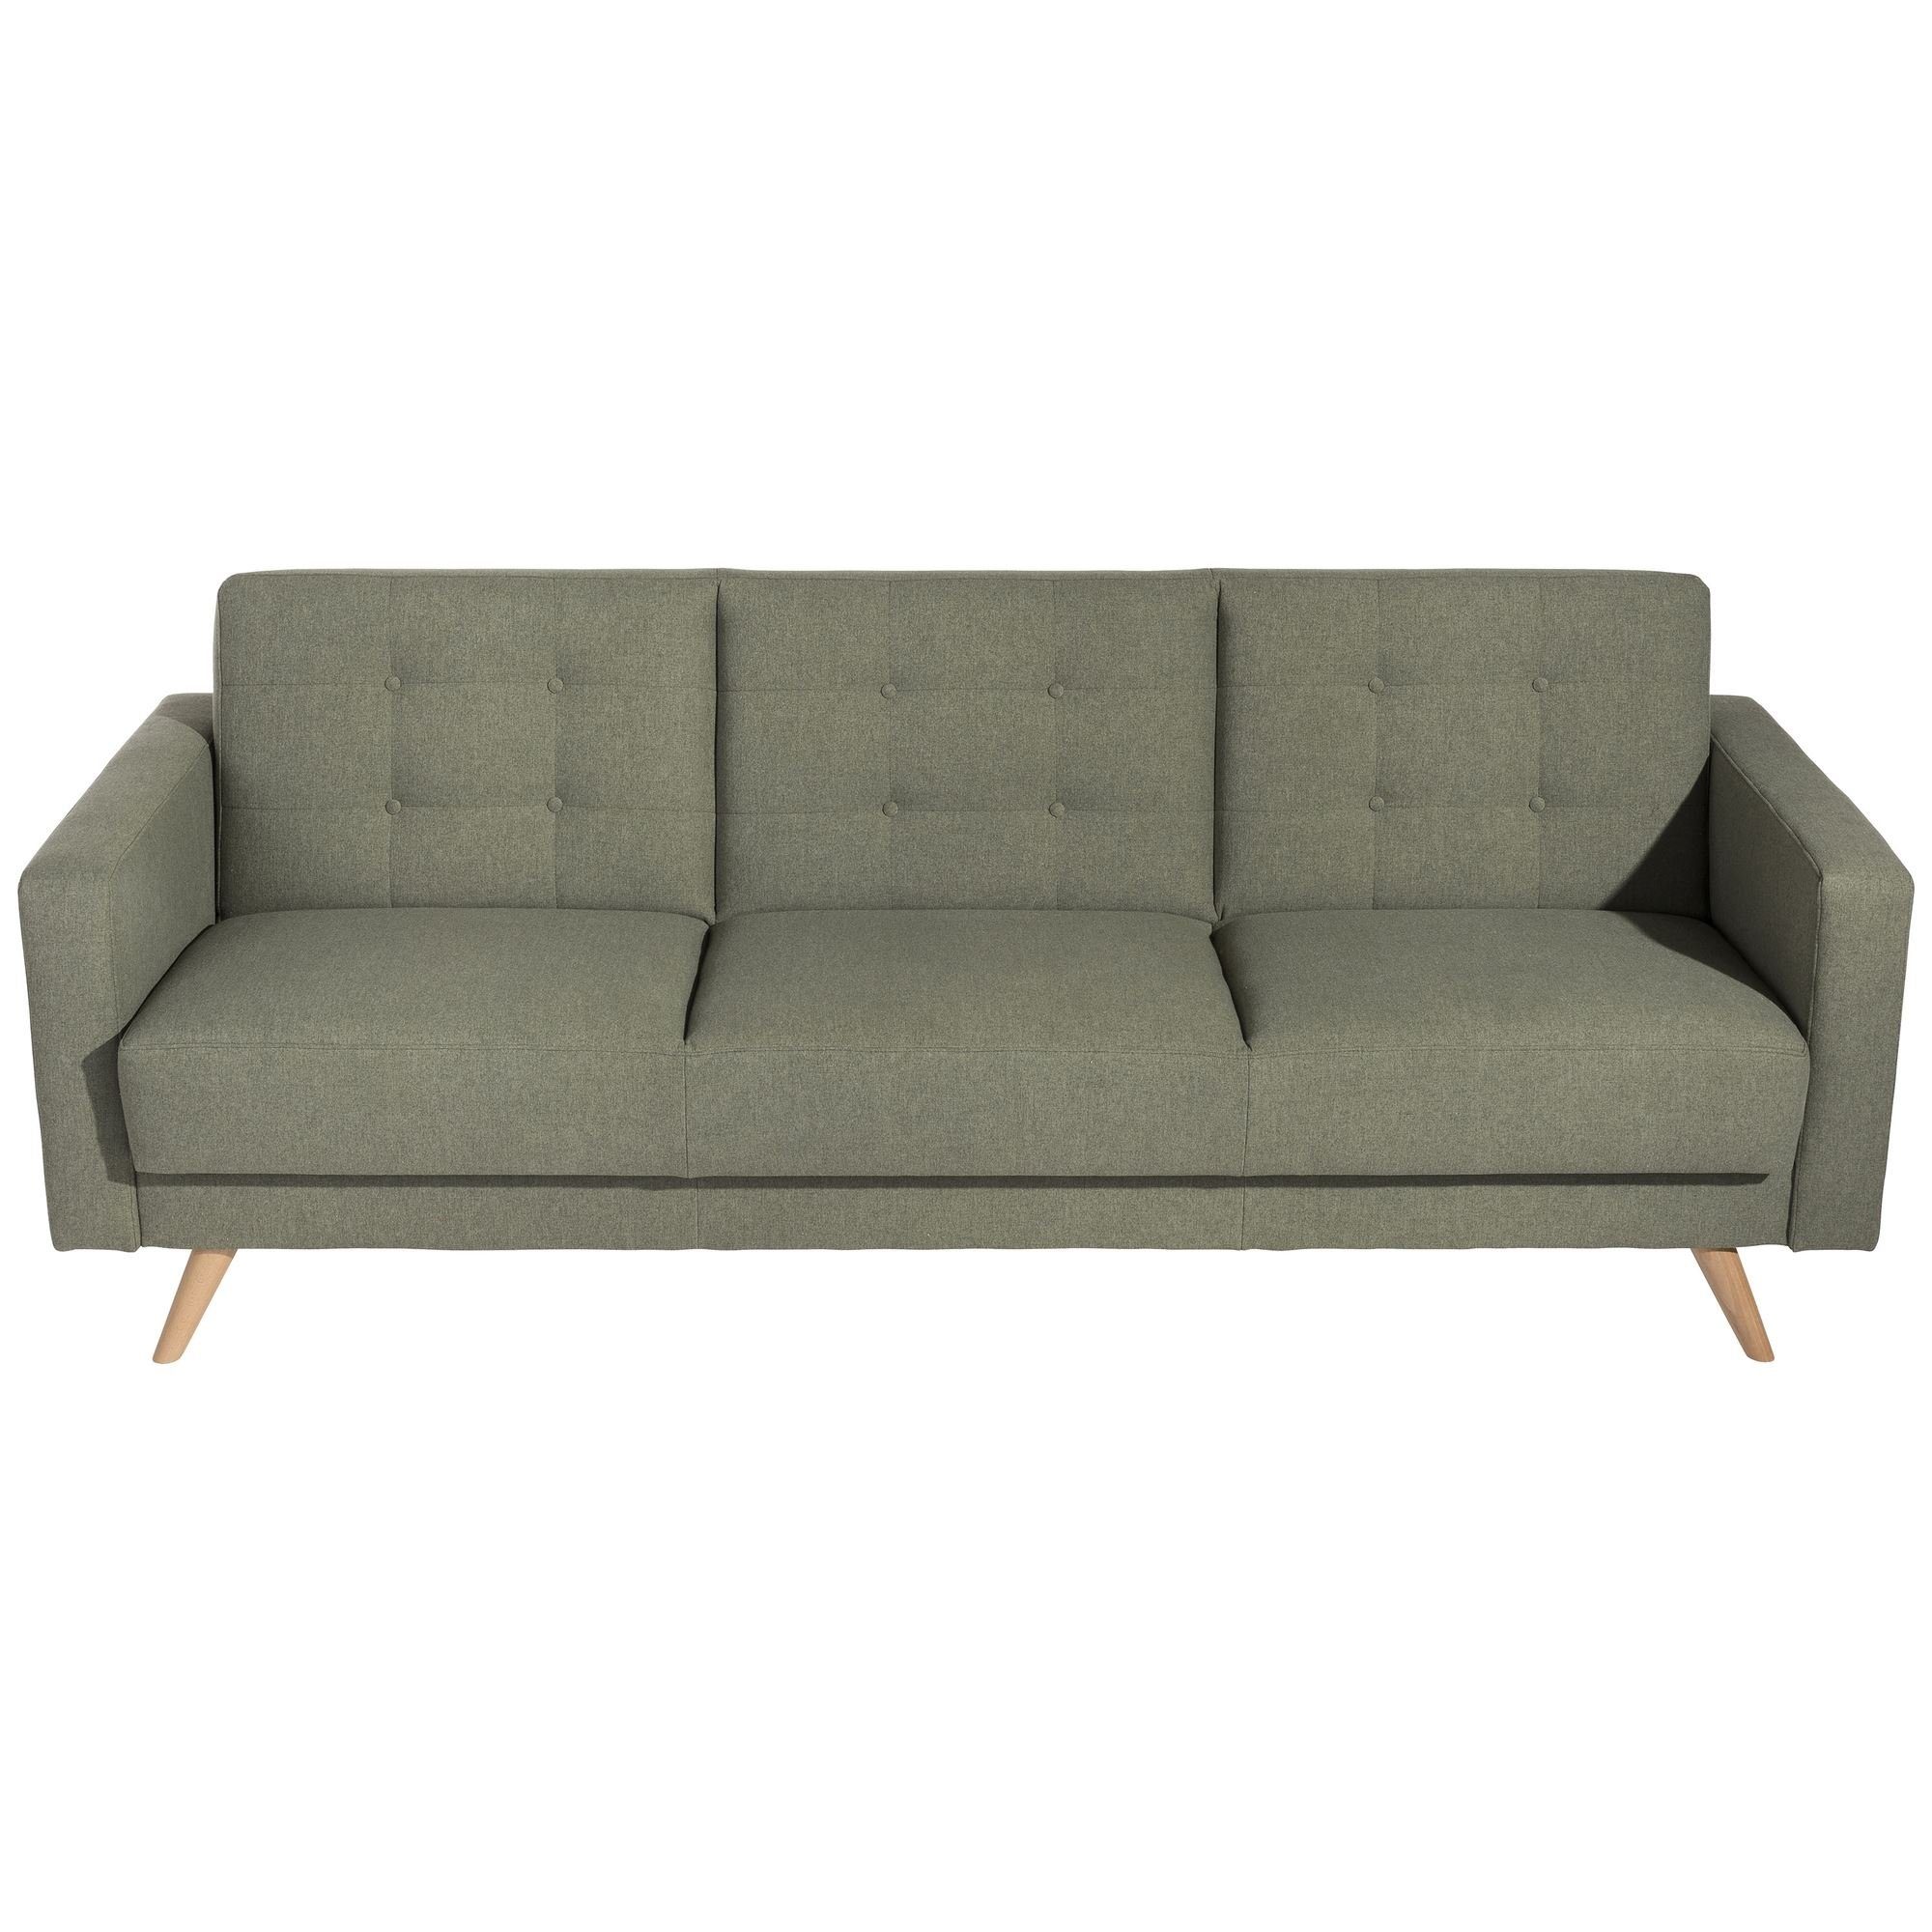 Sitz aufm Kessel 1 58 Kostenlosem Microf, inkl. Bezug Versand Sofa Sofa Bettfunktion hochwertig Teile, verarbeitet,bequemer 3-Sitzer mit Karisa Sparpreis